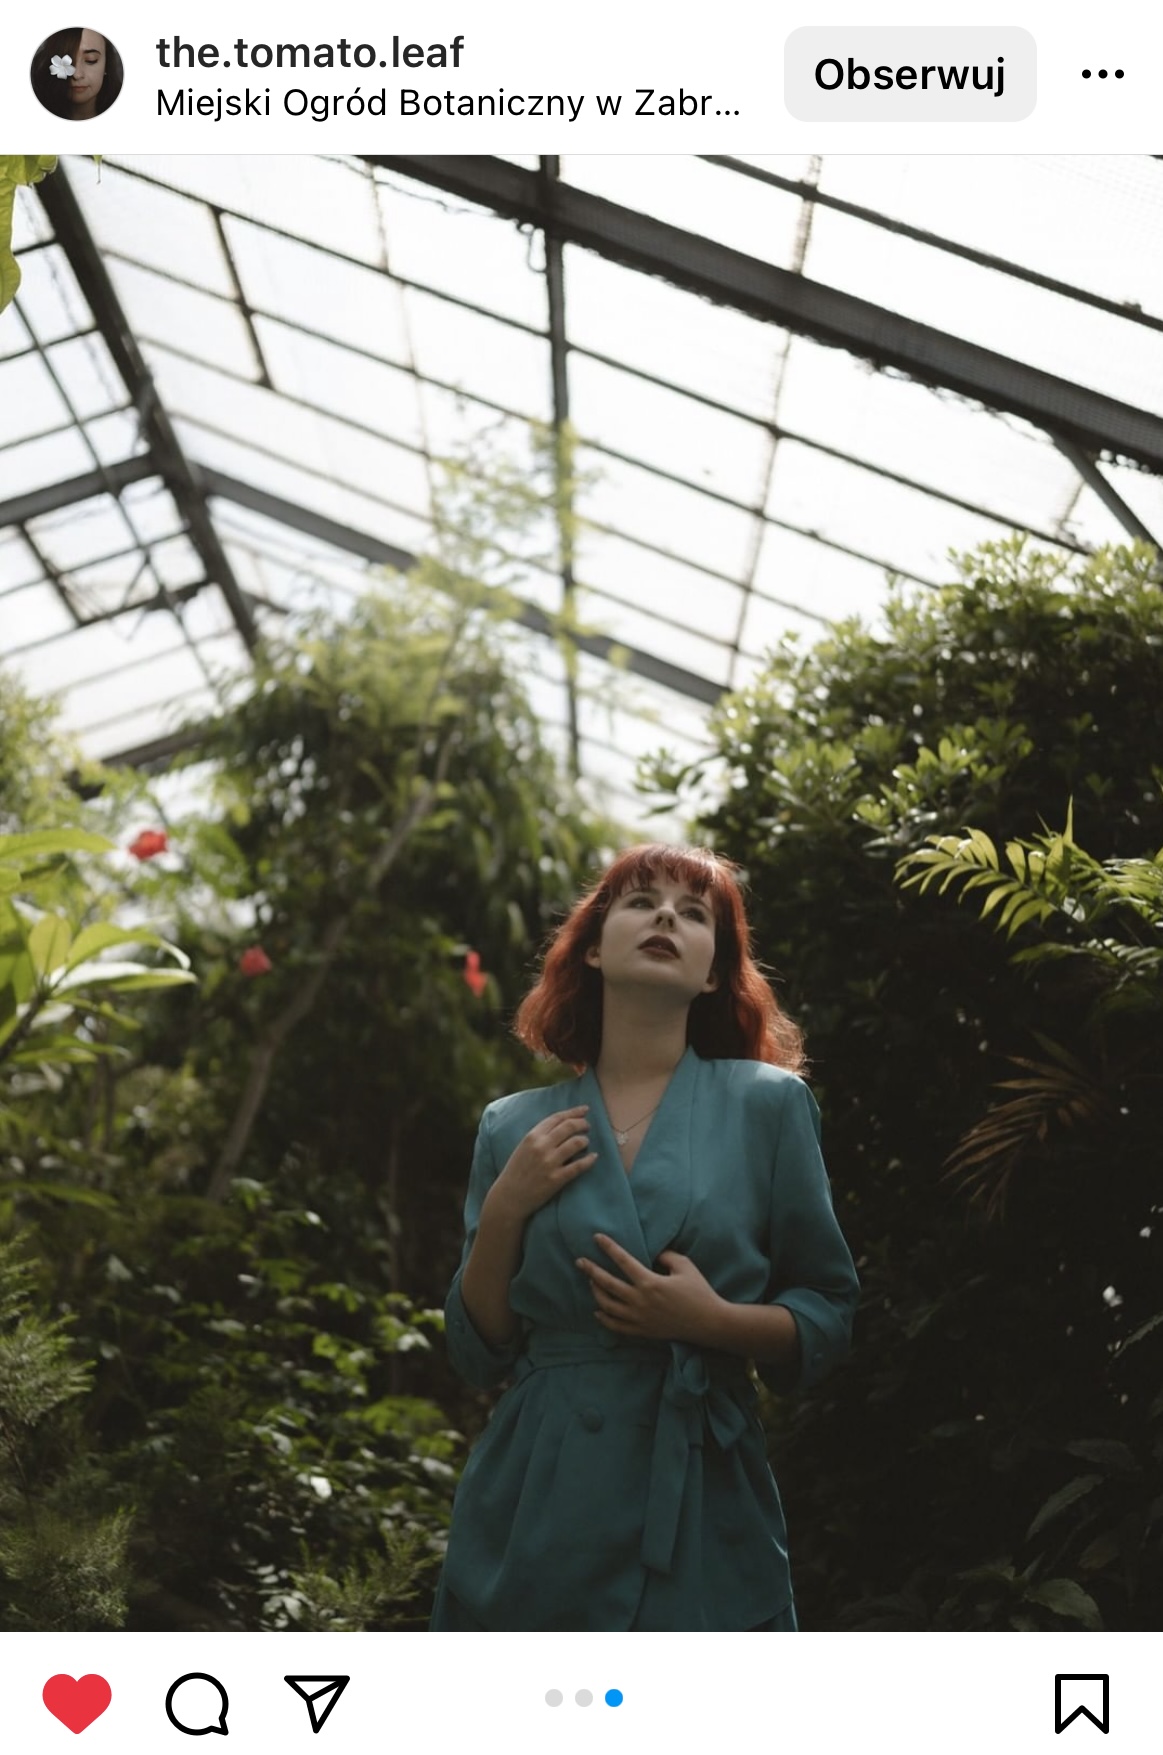 Kobieta w seledynowej sukience i rudych włosach stoi w szklarni pośród roślin.